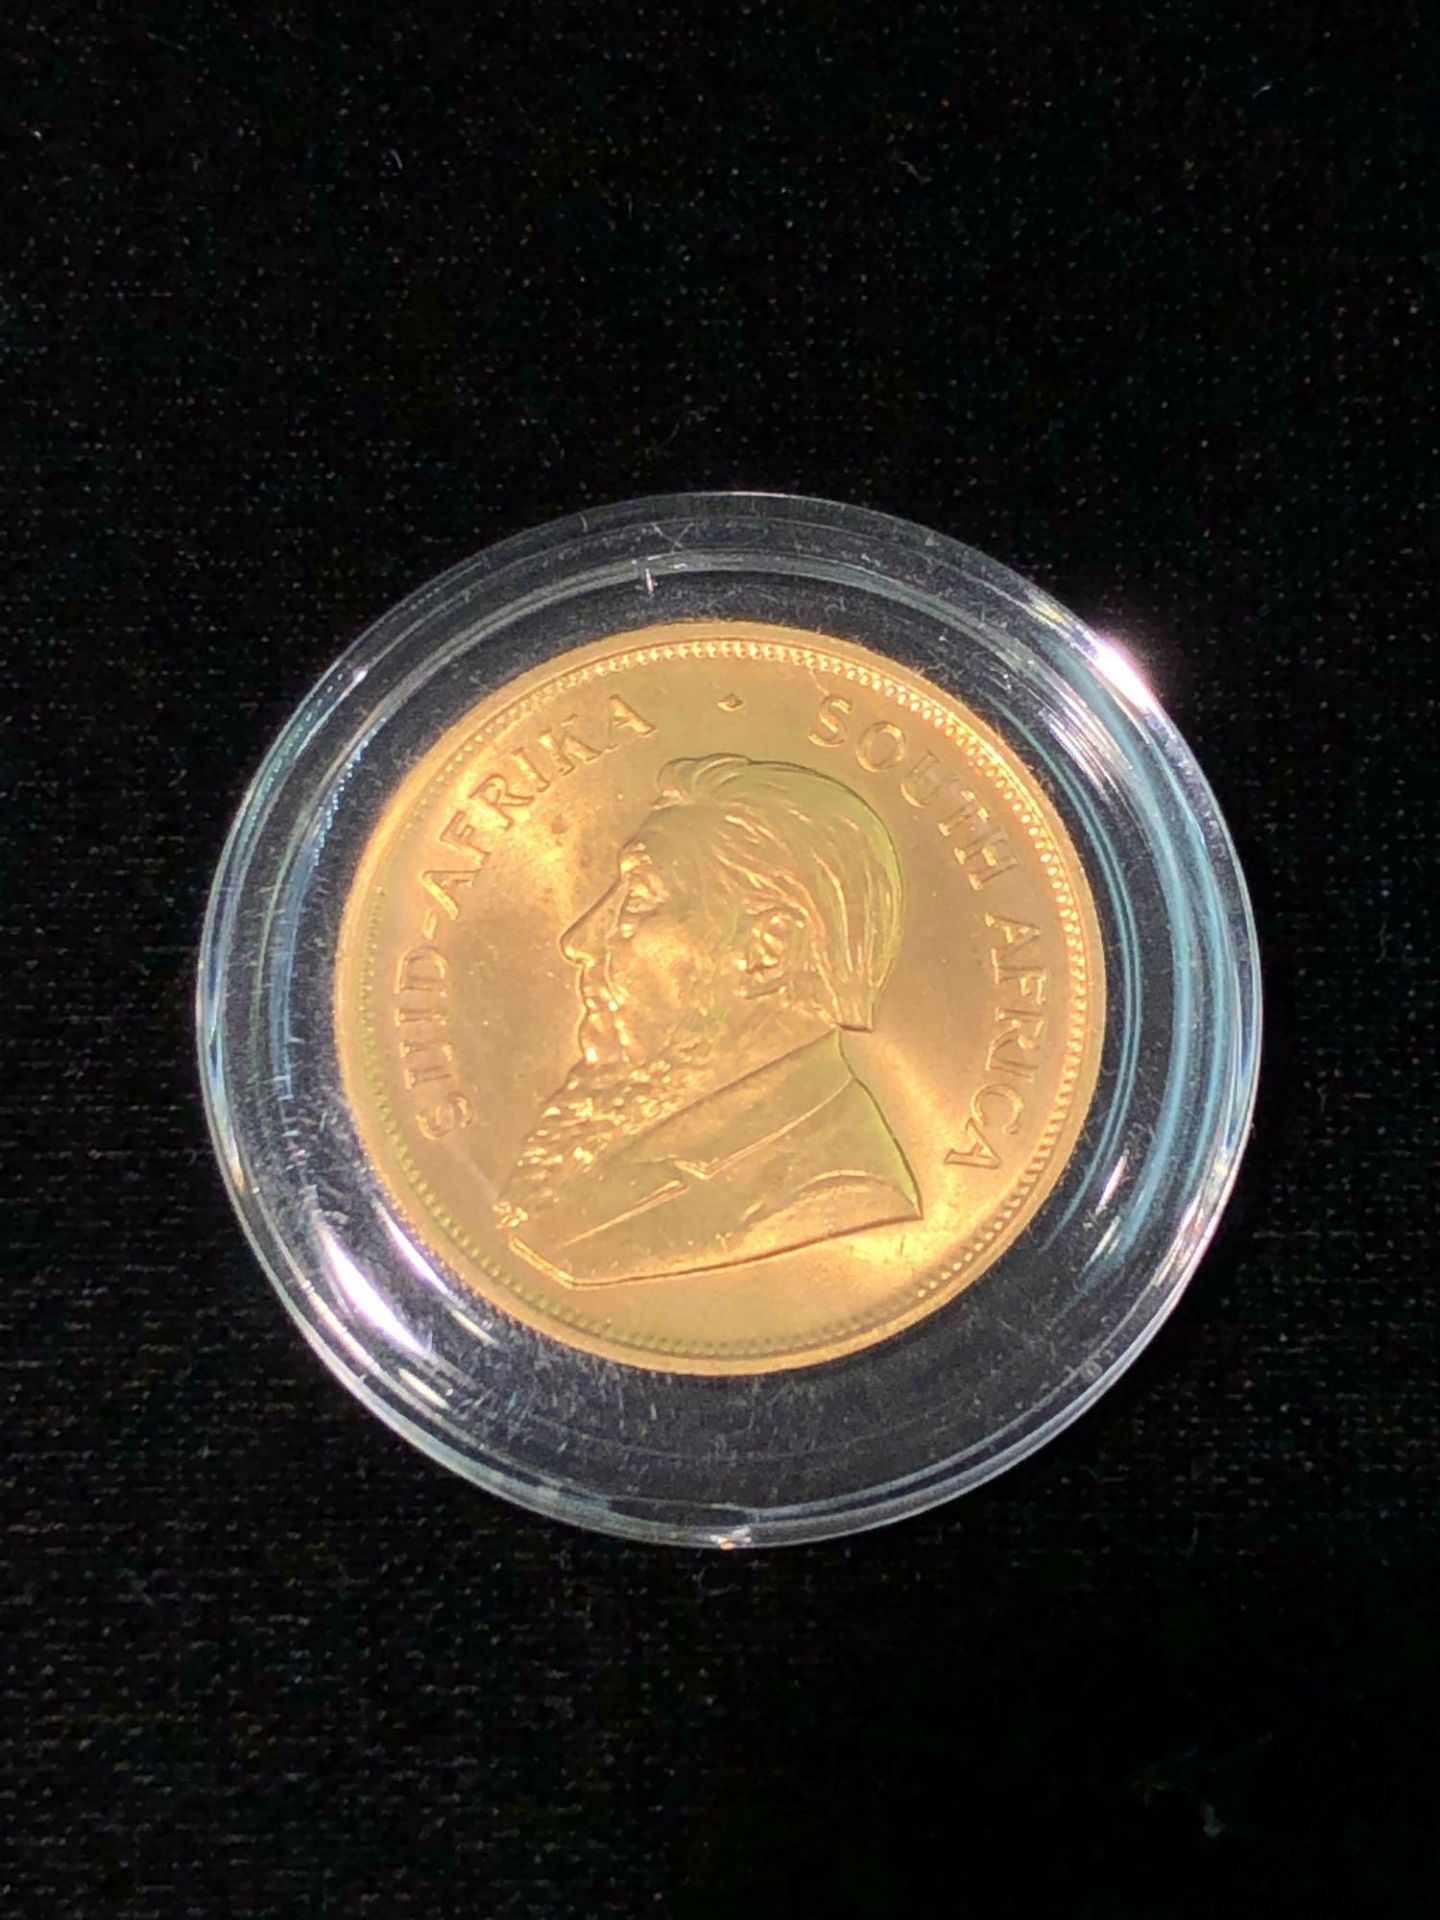 1983 1 OZT FINE GOLD KRUGERRAND COIN - Image 2 of 4